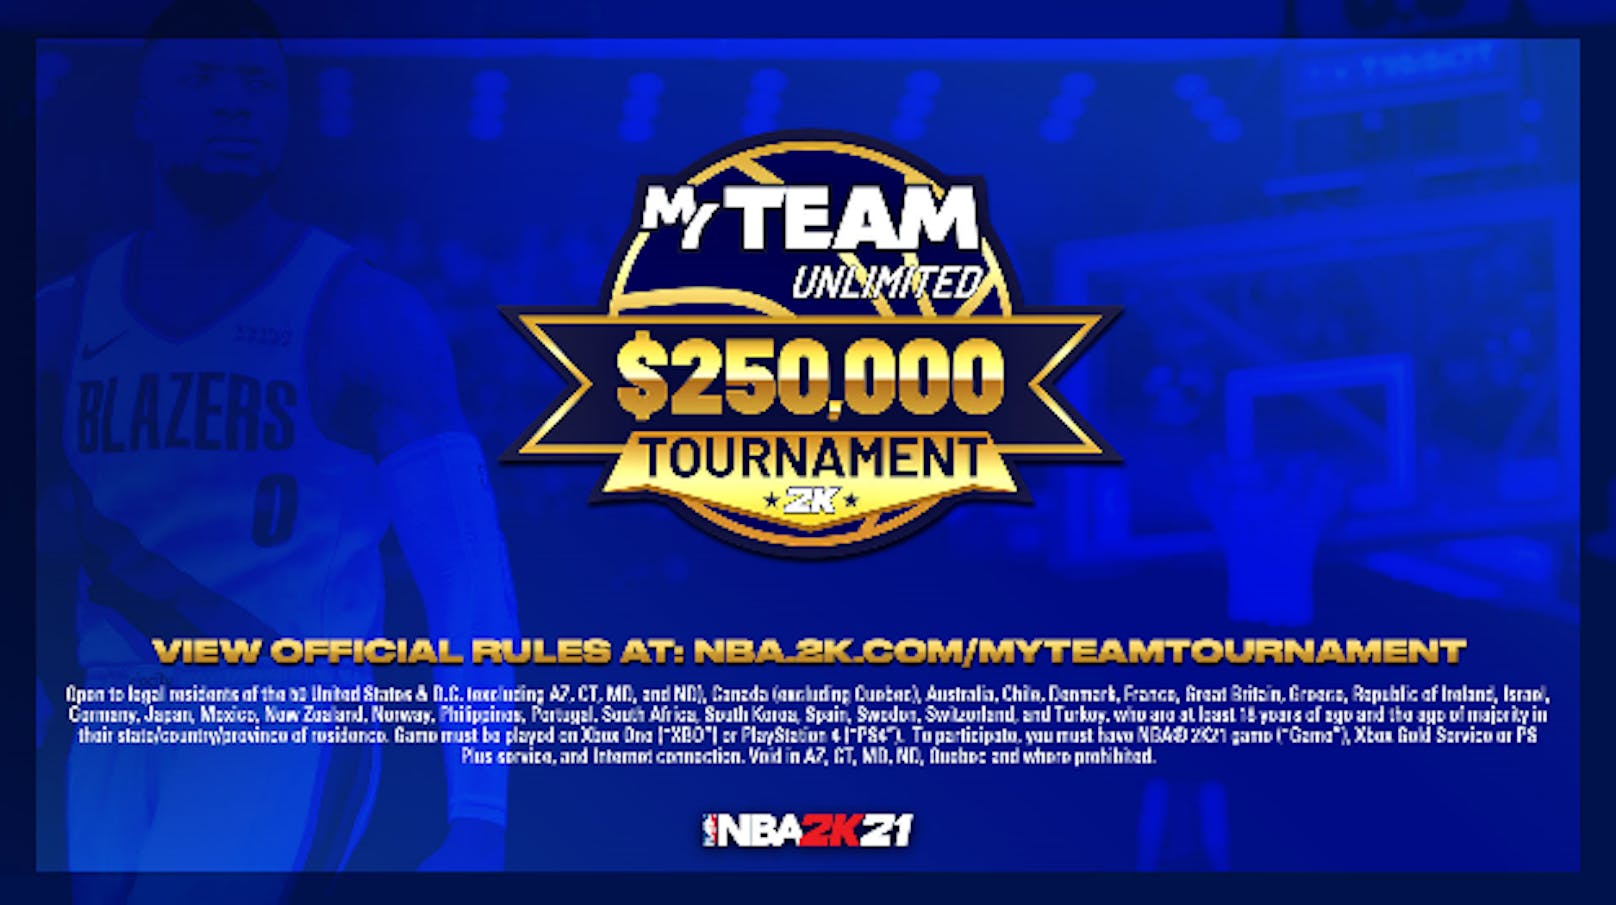 Das NBA 2K21 MyTEAM Unlimited $250,000 USD Tournament startet jetzt.